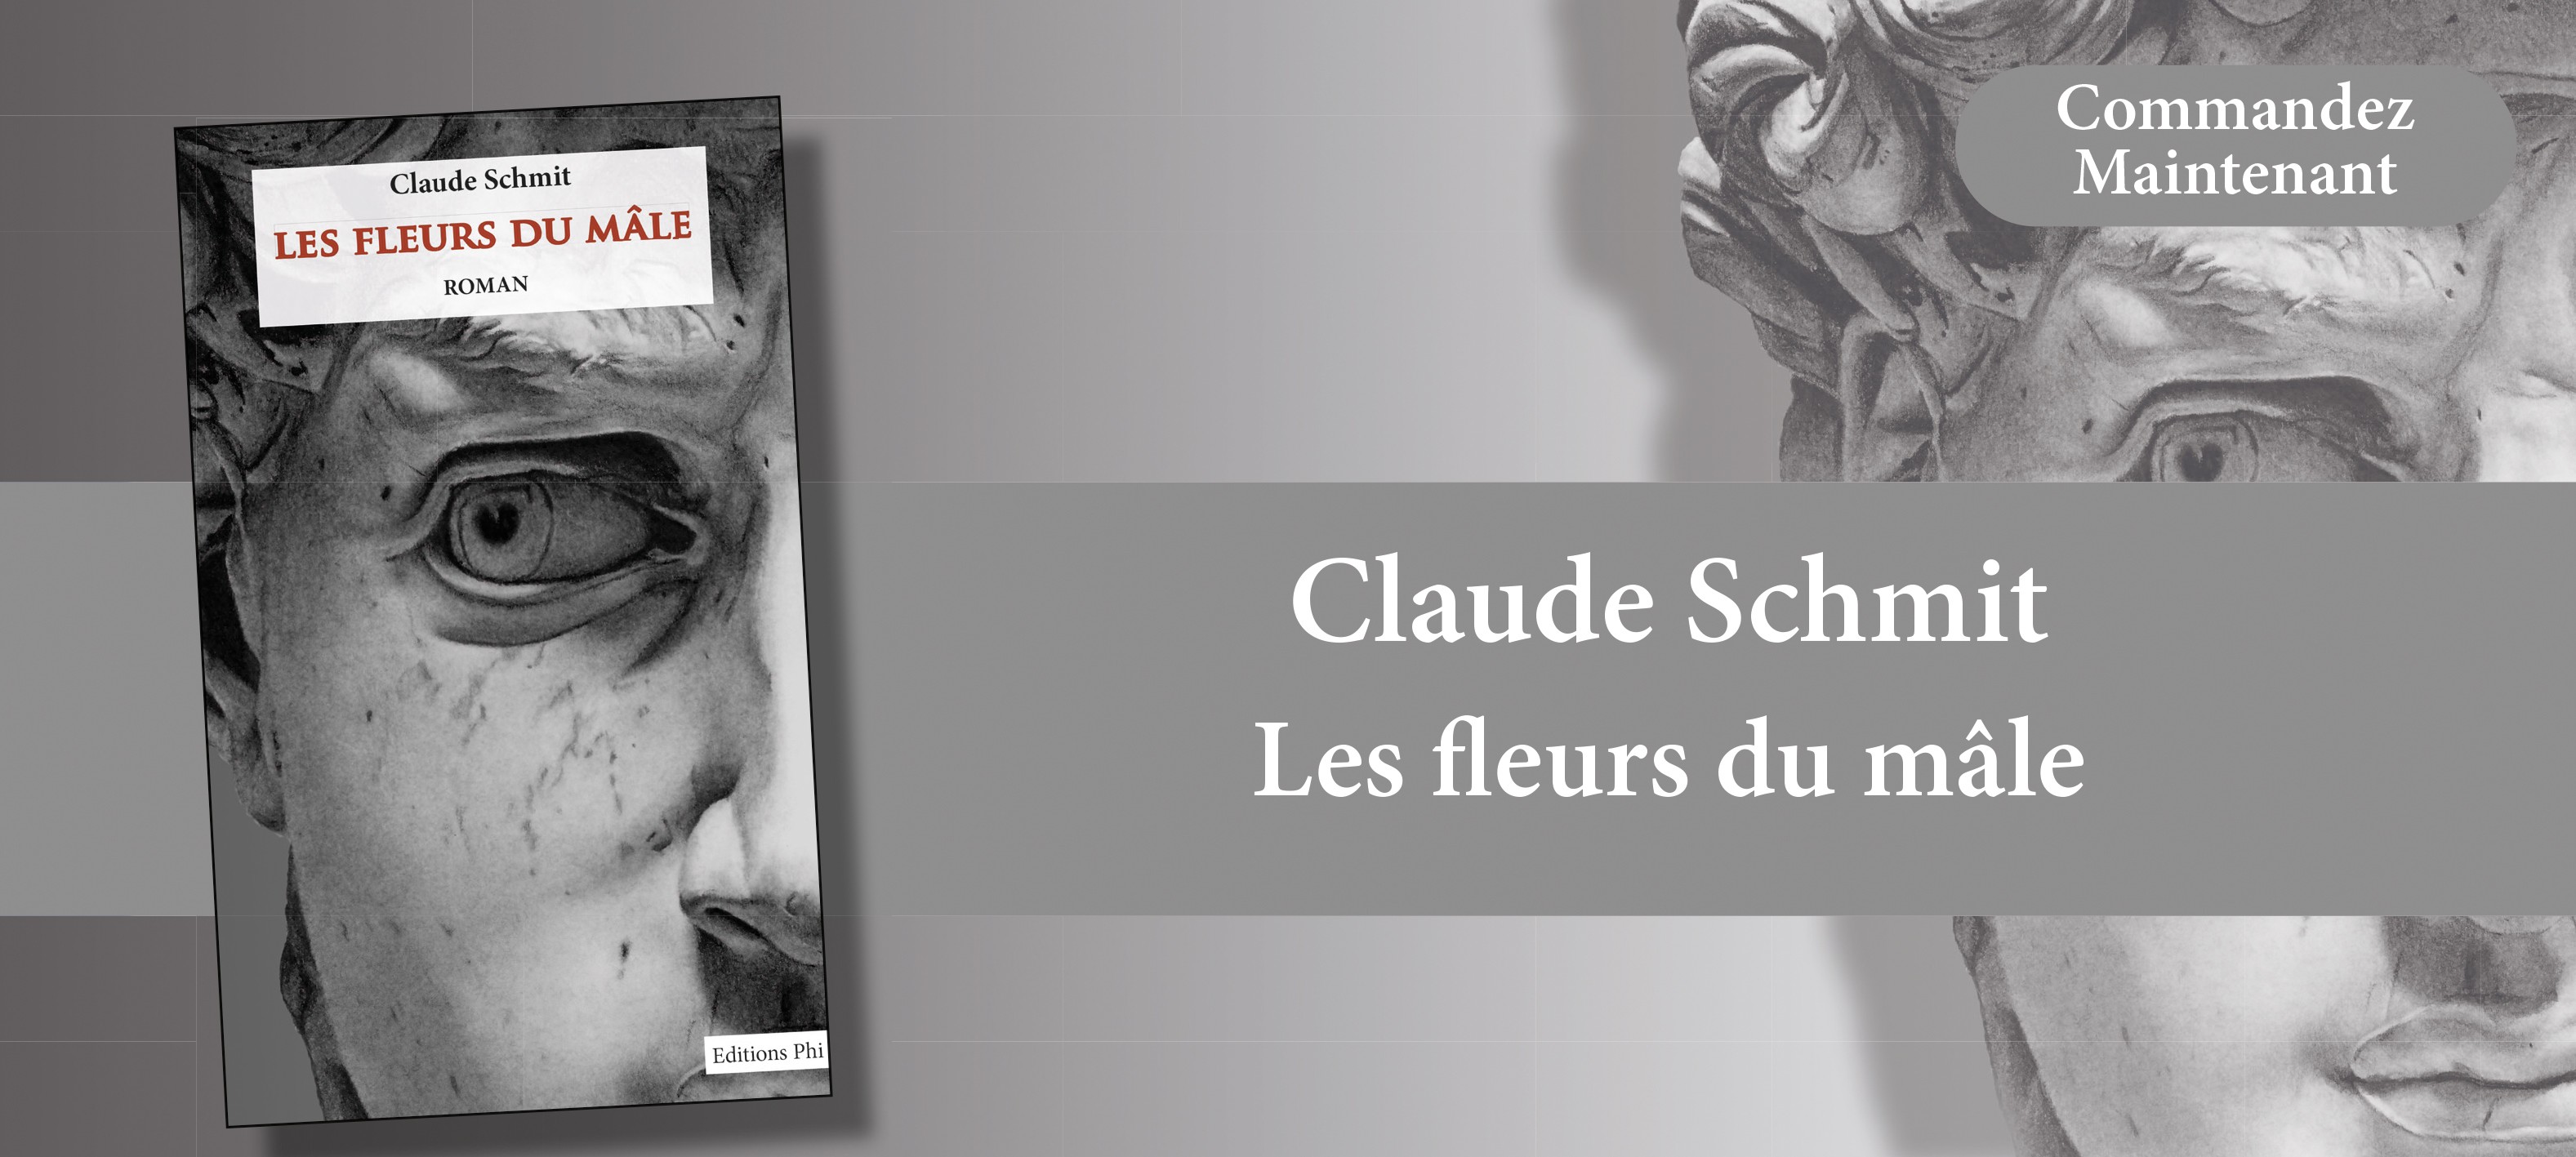 http://www.editionsphi.lu/fr/francais/522-claude-schmit-les-fleurs-du-male.html